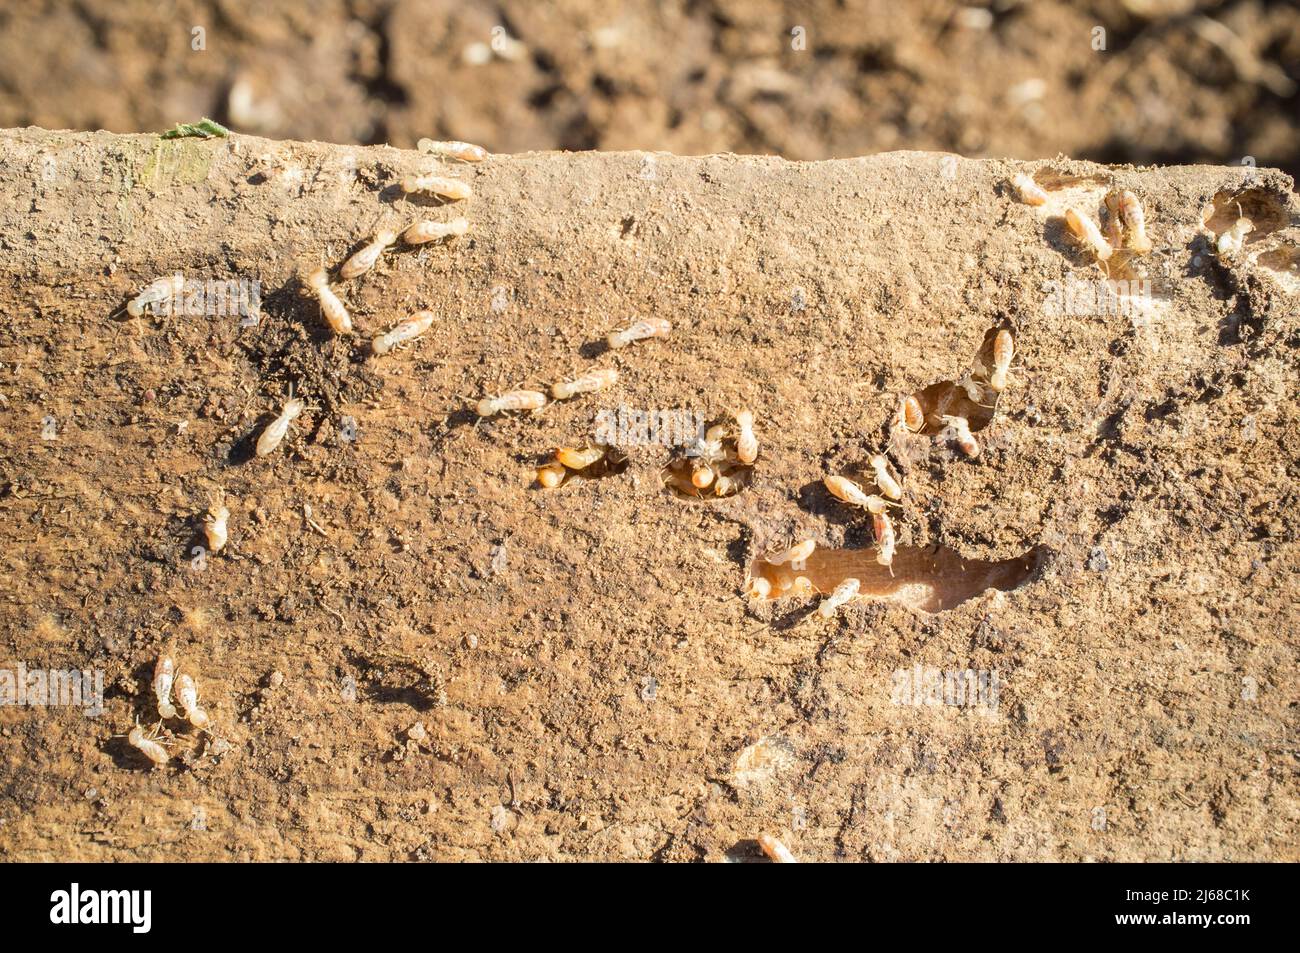 Termites travaillant sur de vieilles poutres en bois. Vue aérienne Banque D'Images